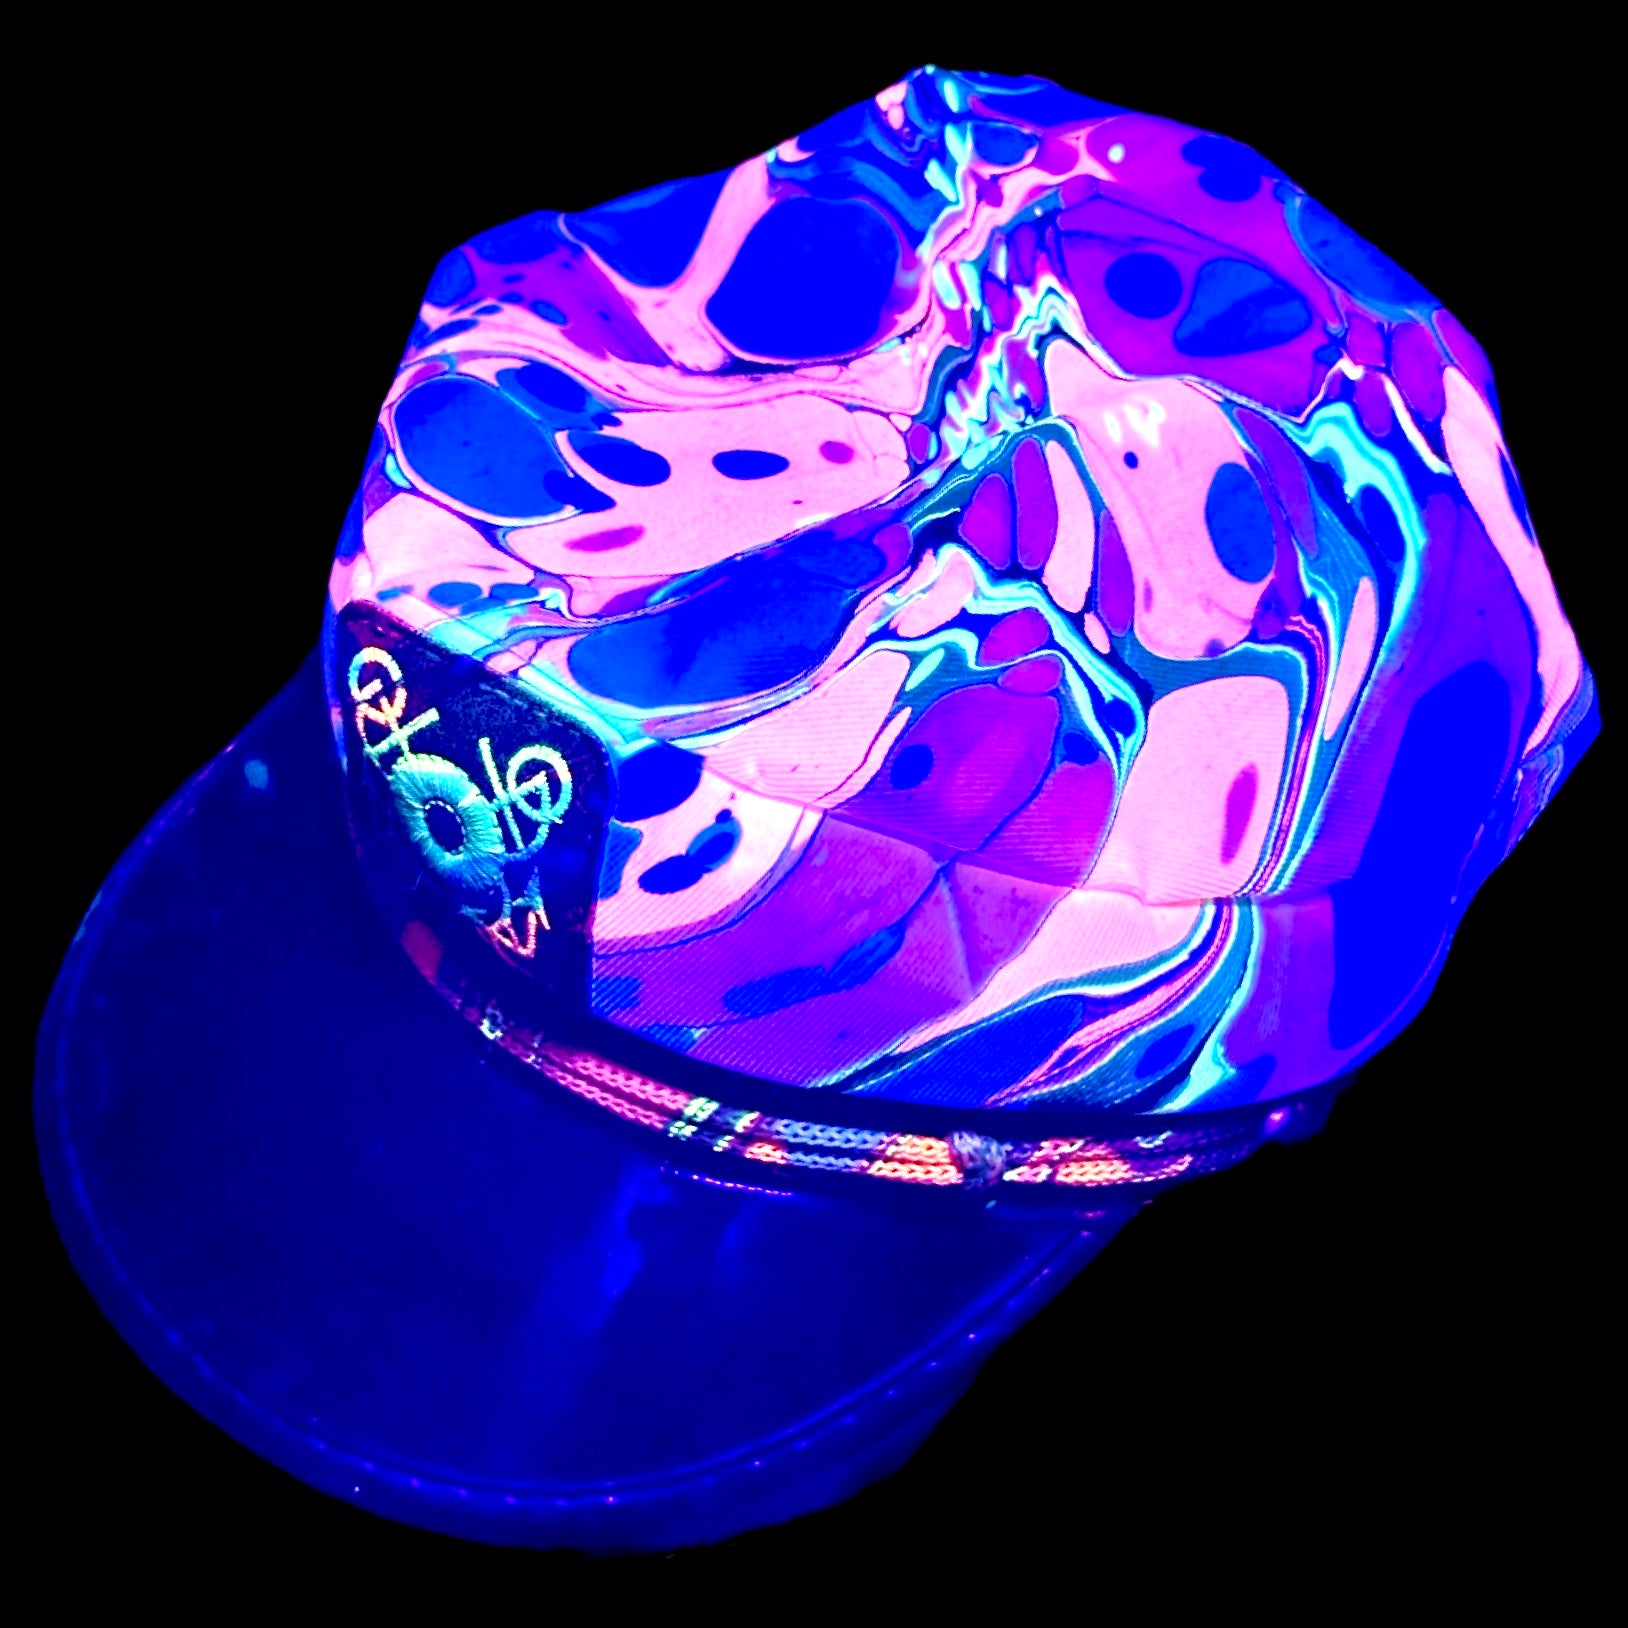 Captain hat (UV REACTIVE)